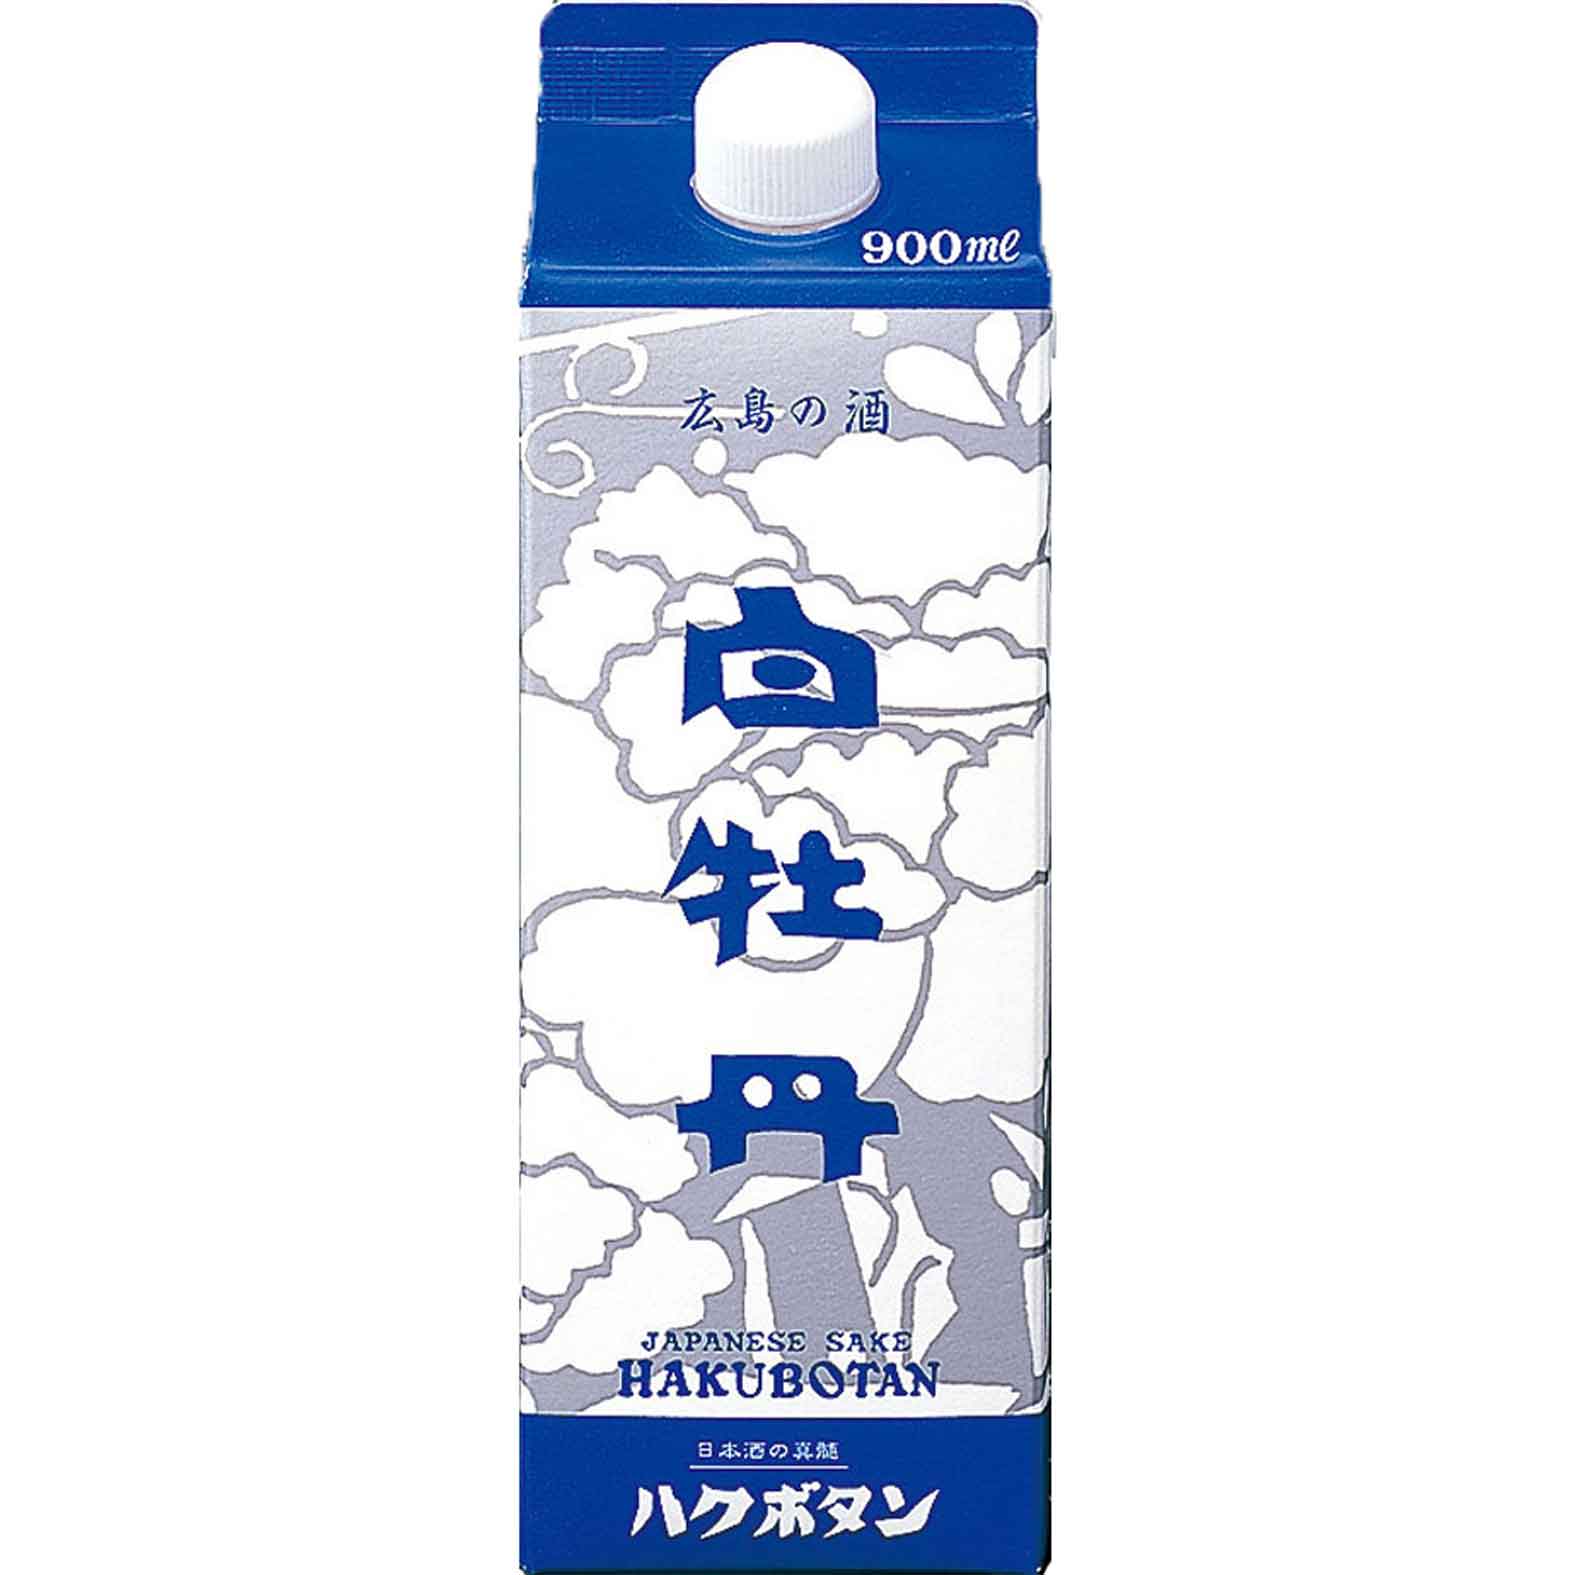 【日本酒 白牡丹】広島の酒 900mlパック詰